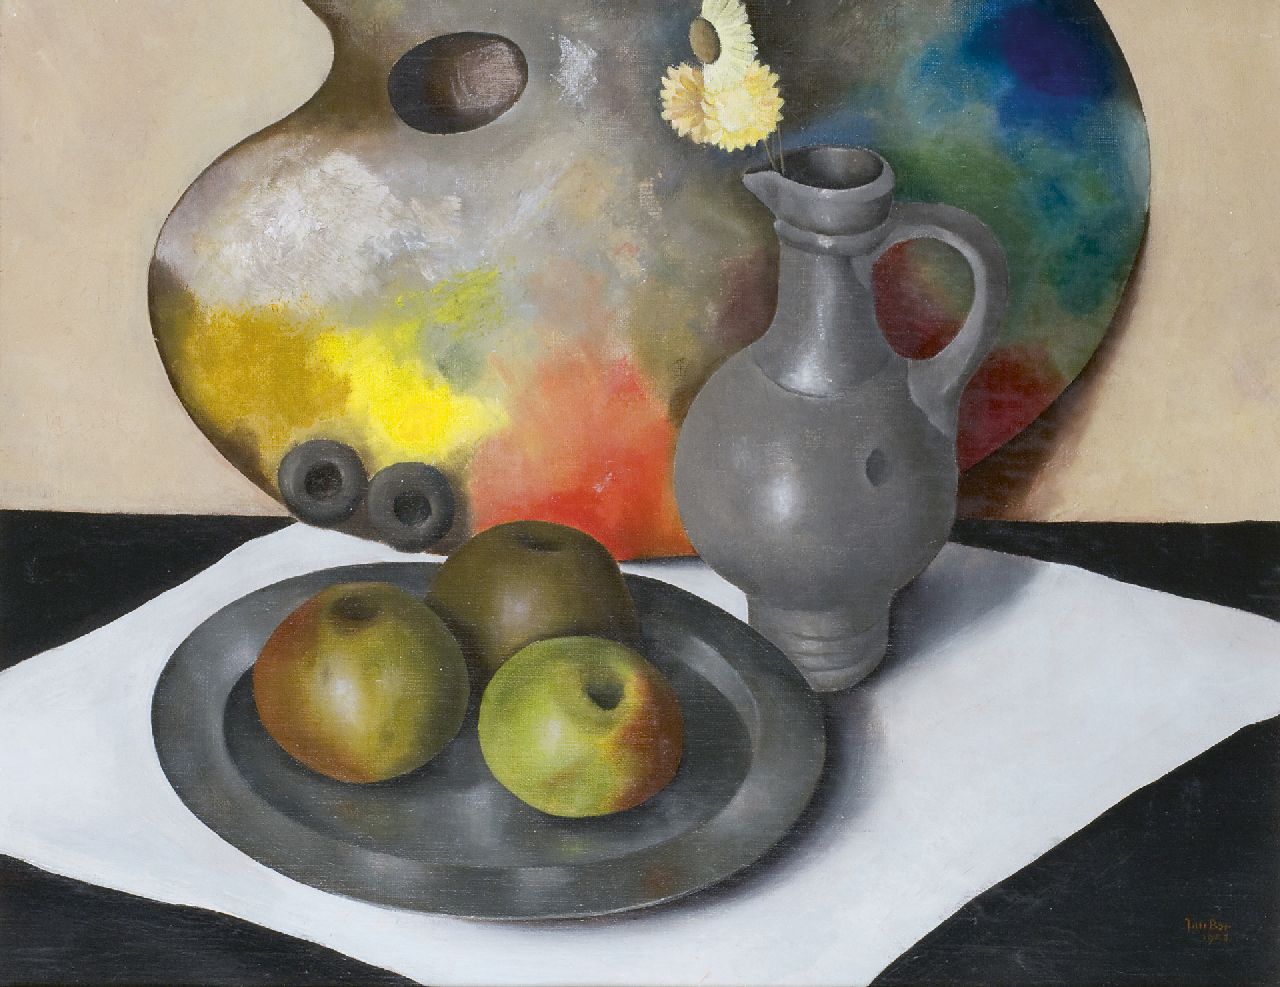 Bor J.  | Jan Bor, Stilleven met palet, appels, tinnen schaal en kan, olieverf op doek 39,8 x 50,3 cm, gesigneerd rechtsonder en gedateerd 1943